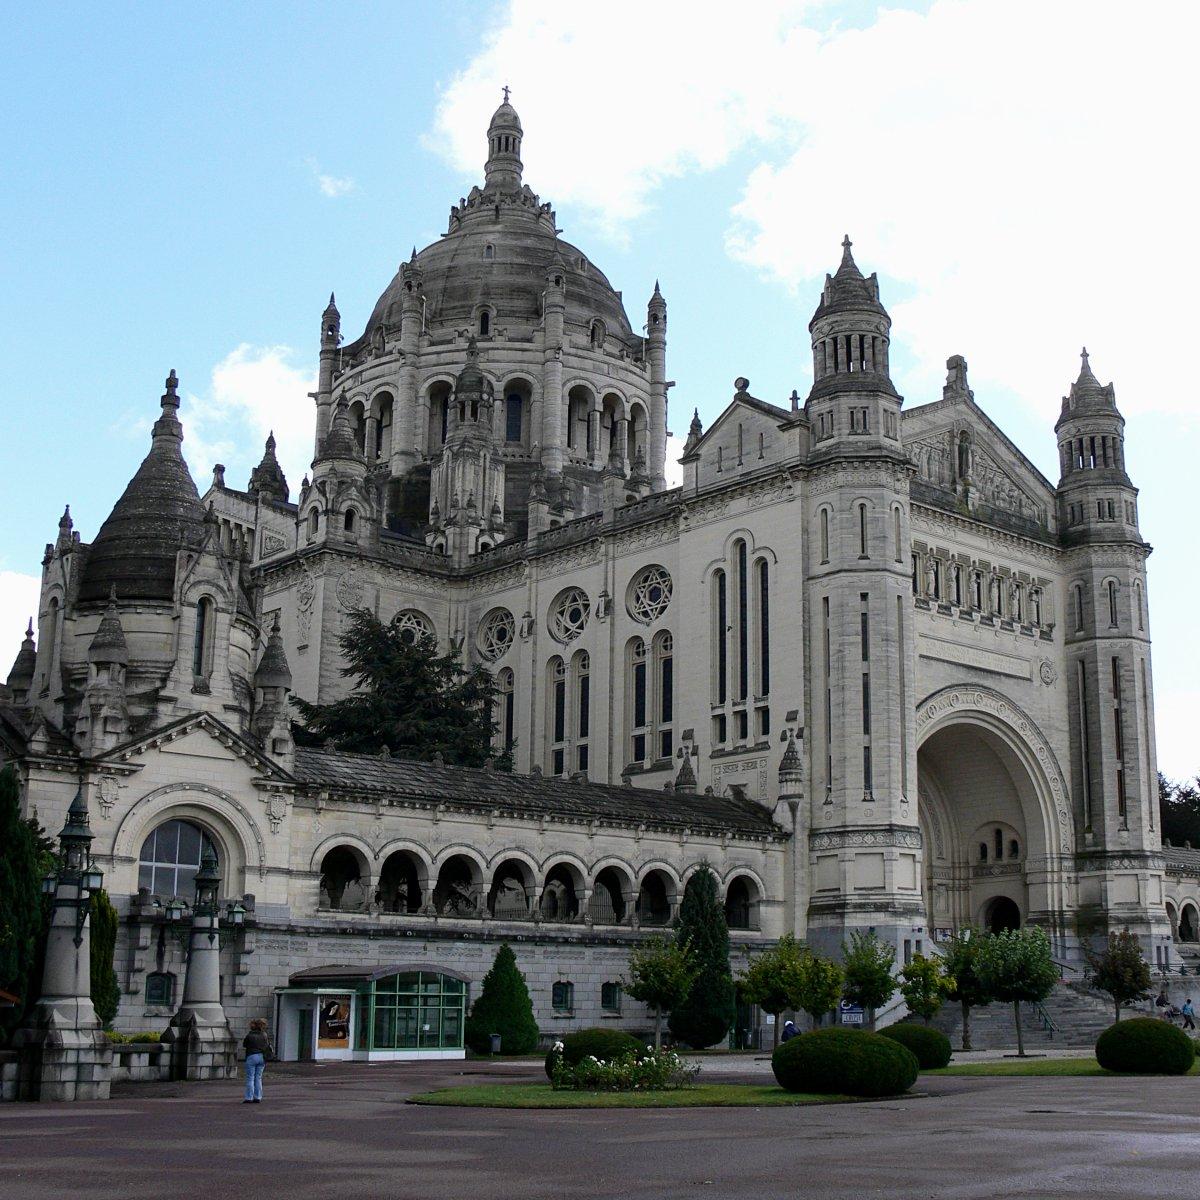 Basilica of St. Thérèse in France